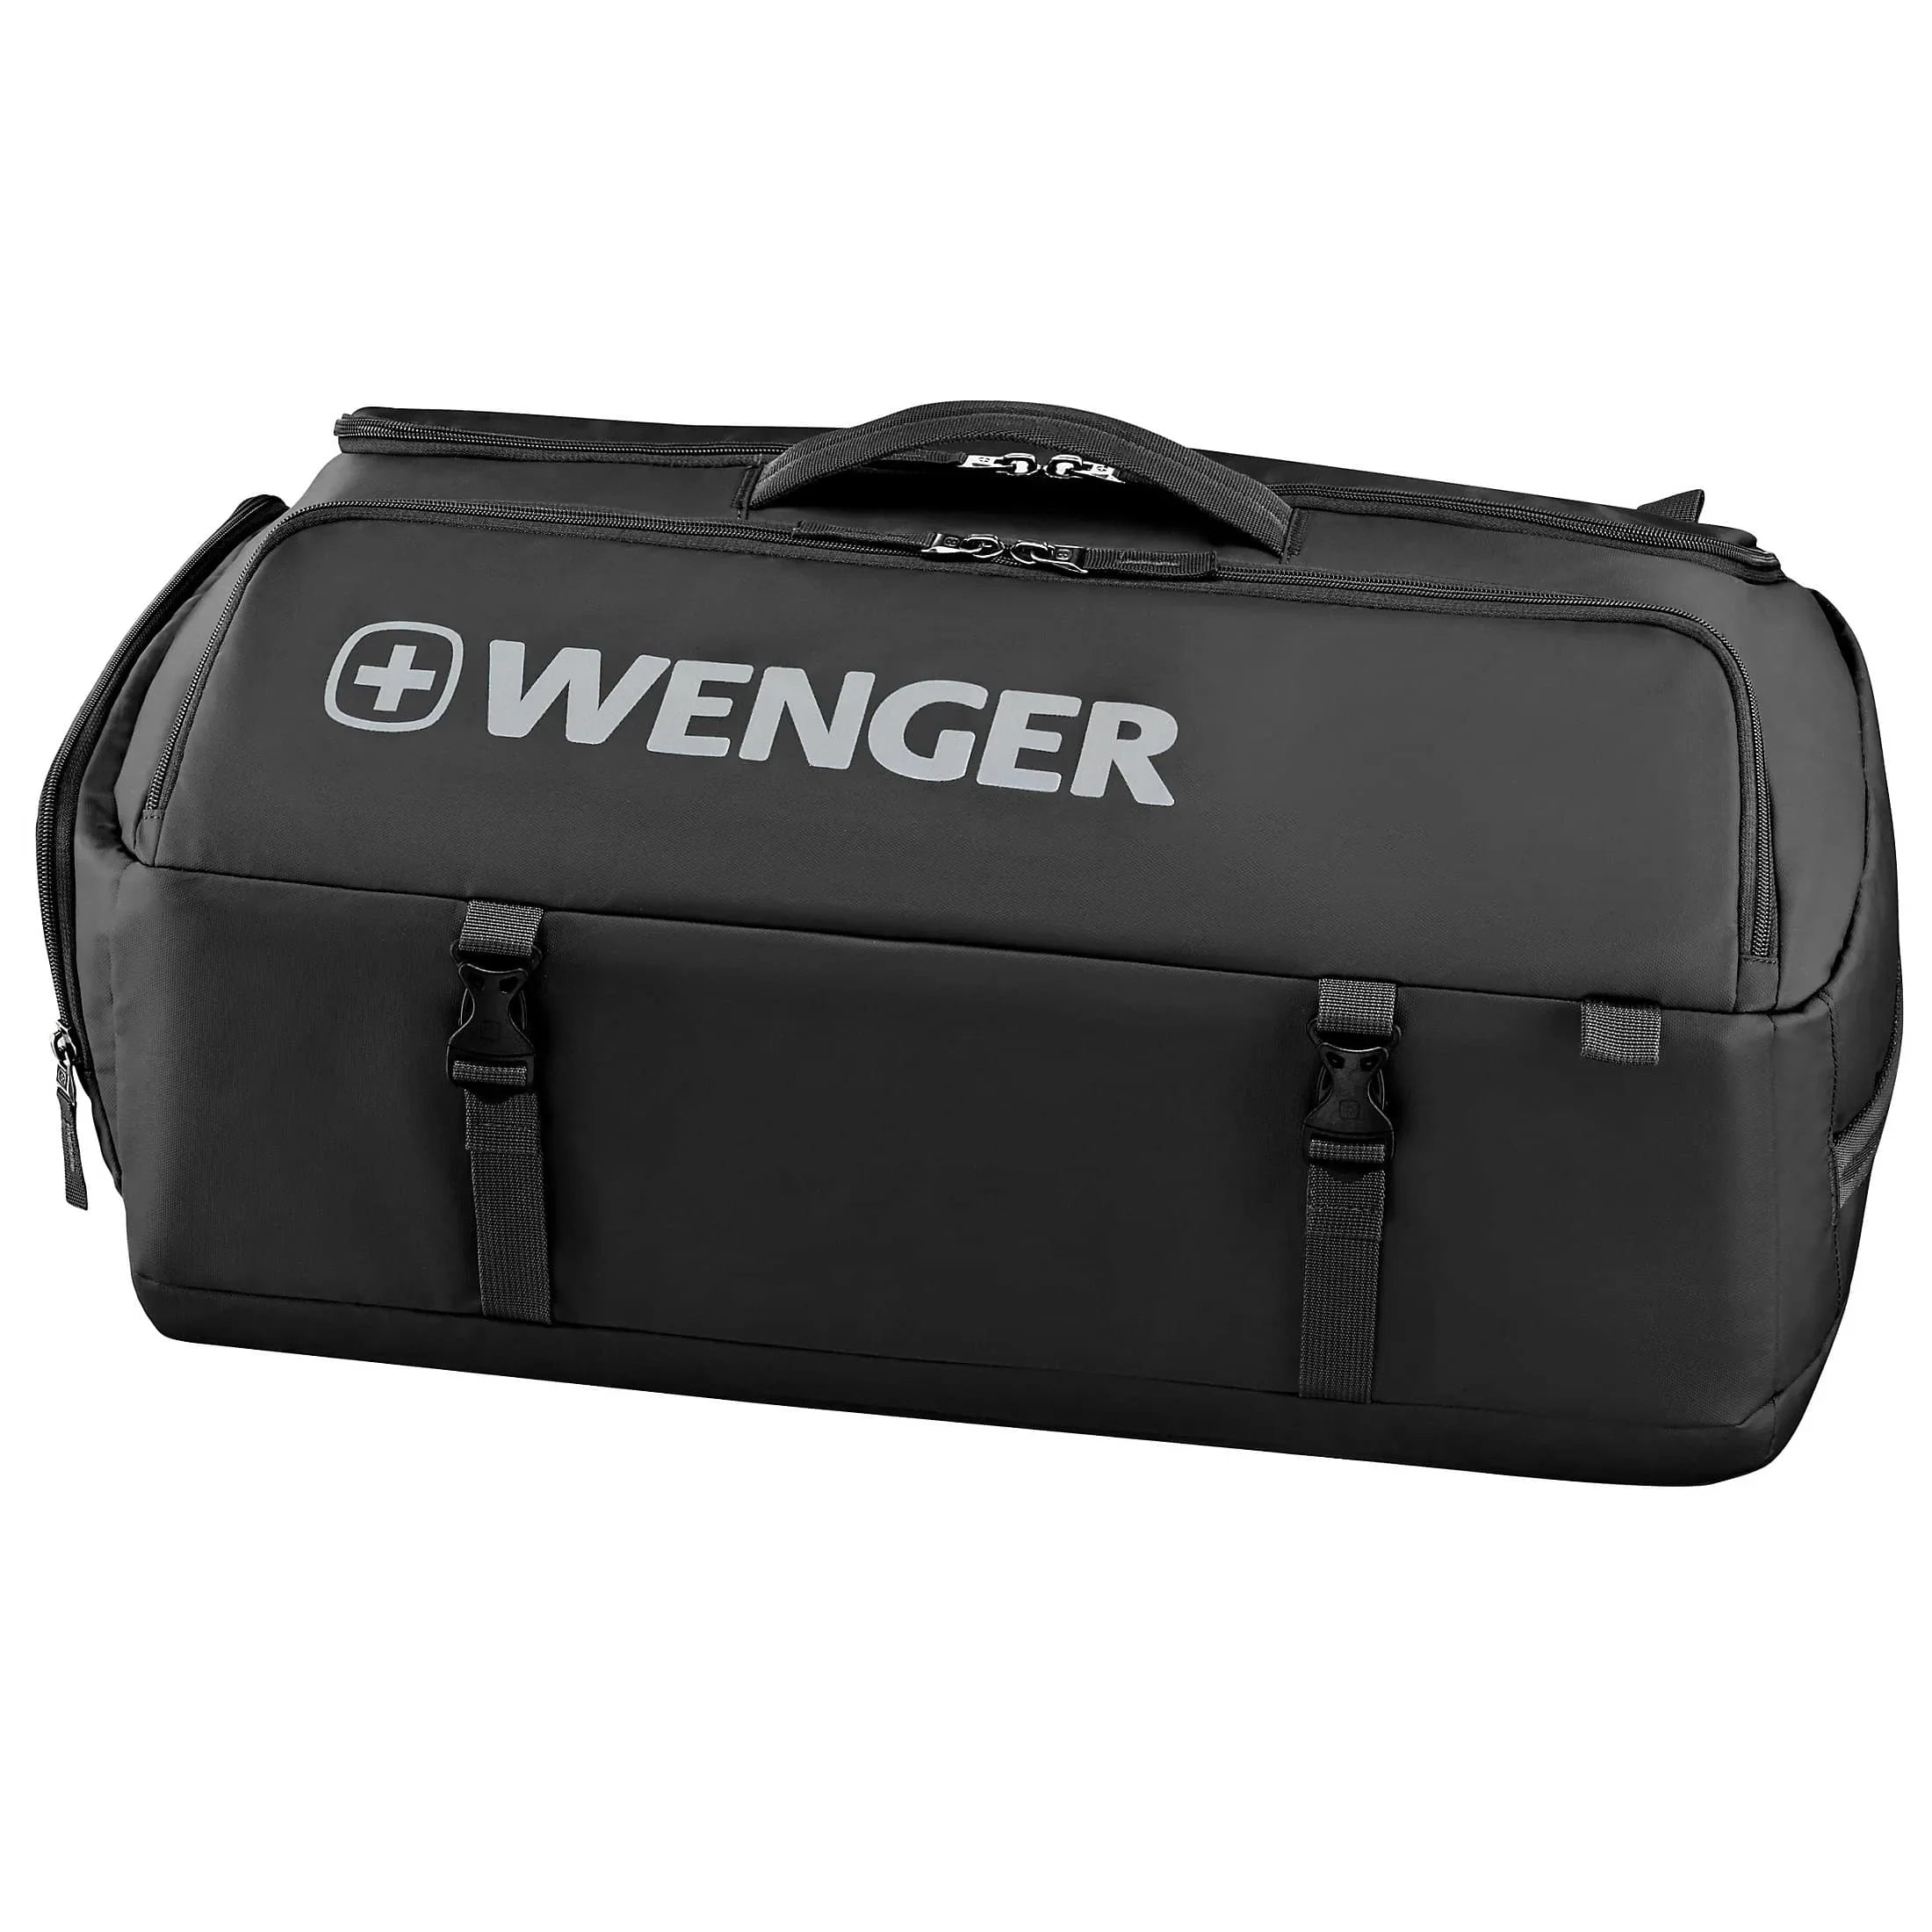 Wenger Business XC Hybrid Travel Bag 65 cm - Navy